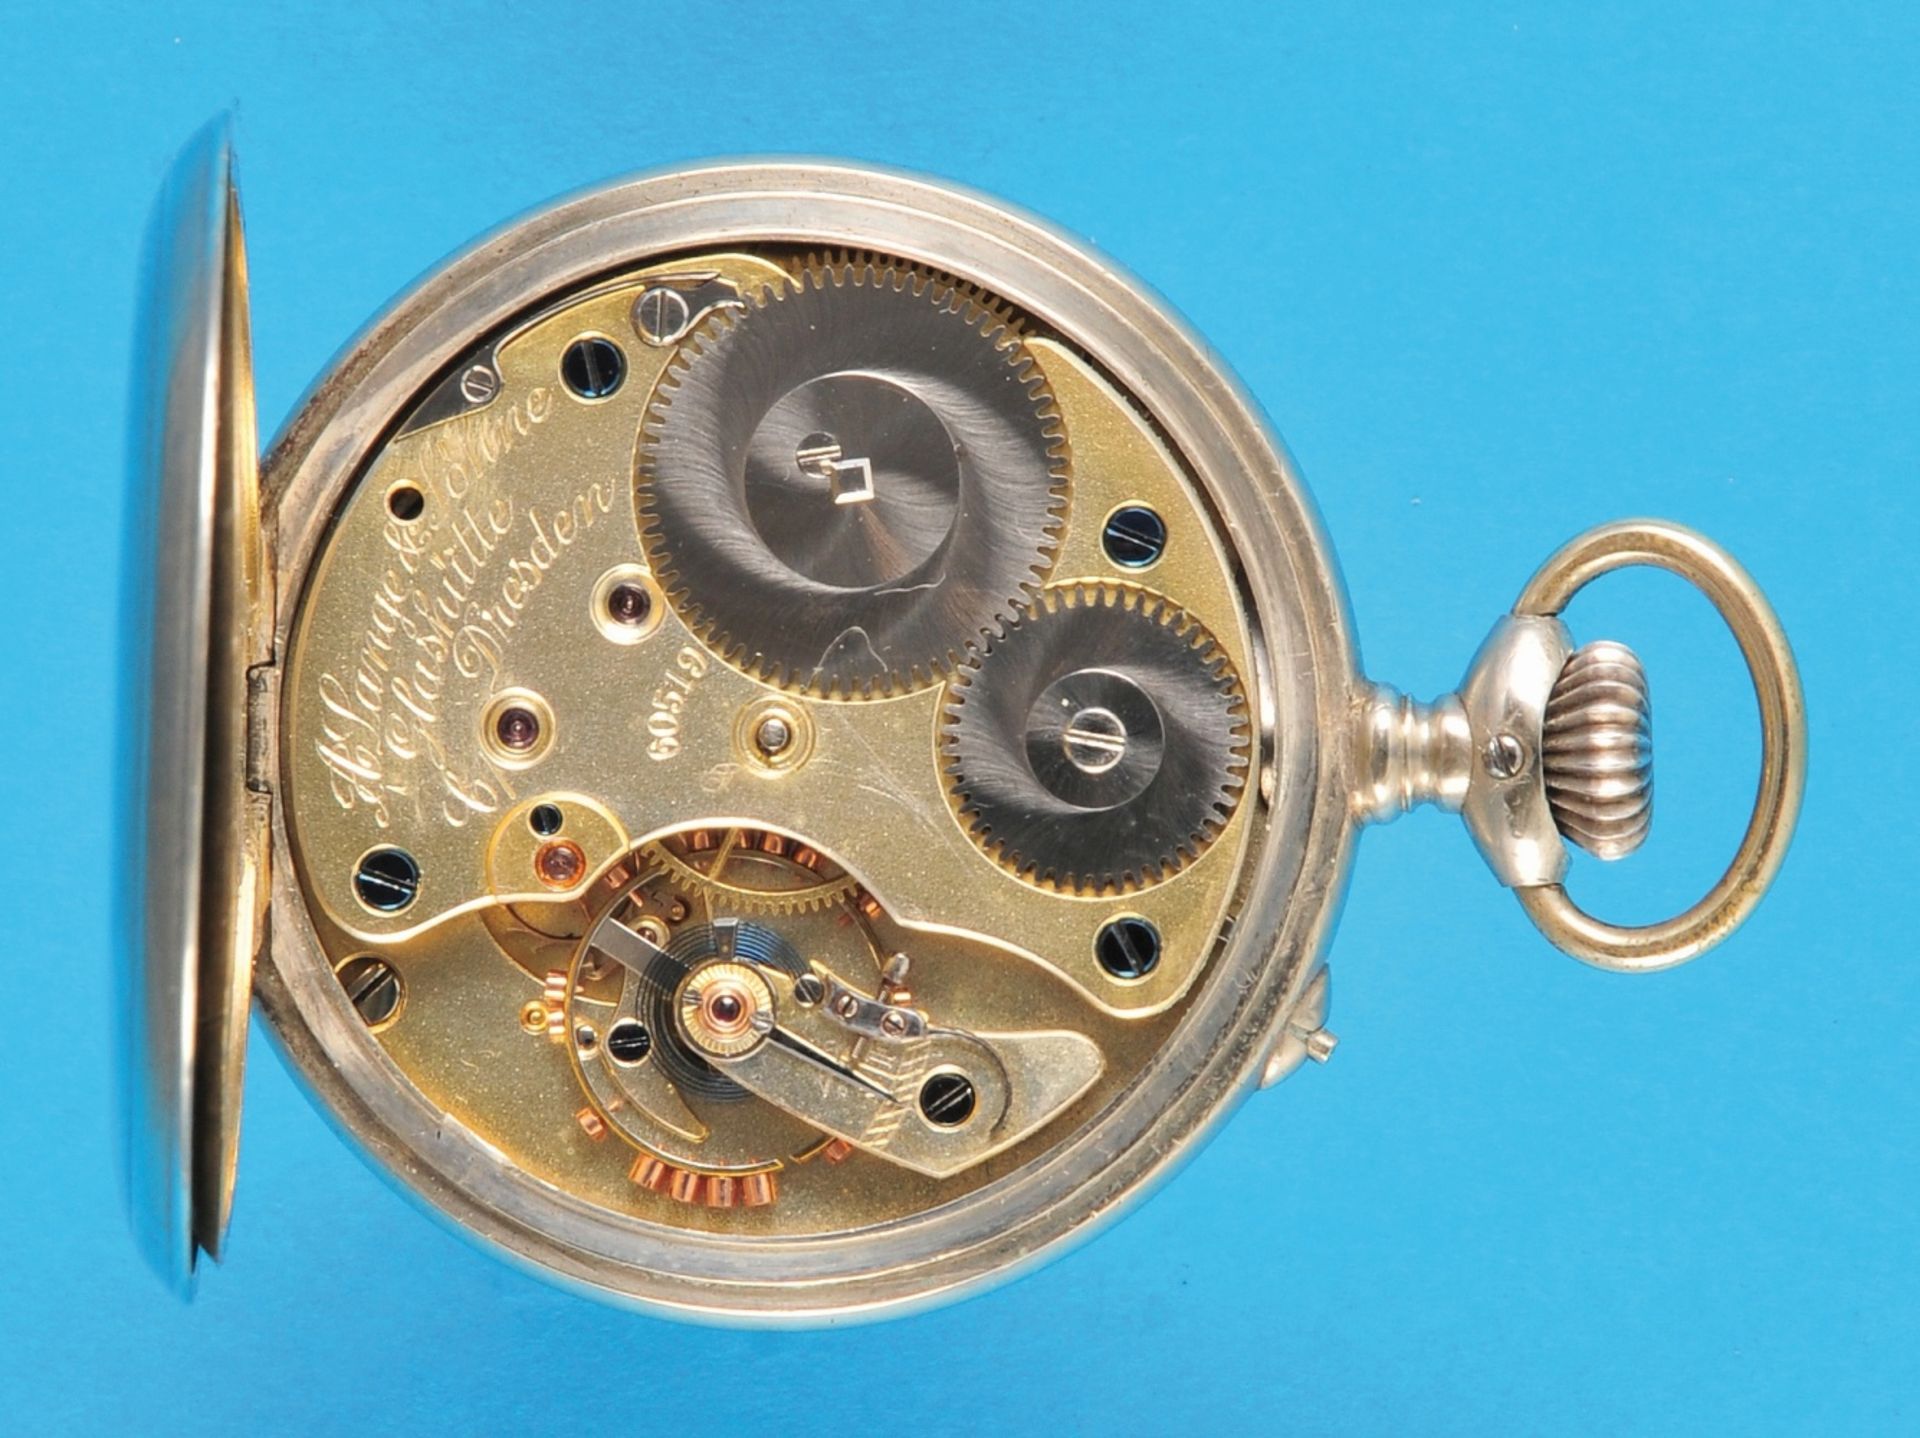 A.Lange & Söhne Glashütte b. Dresden, Pocket watch movement in nickel case